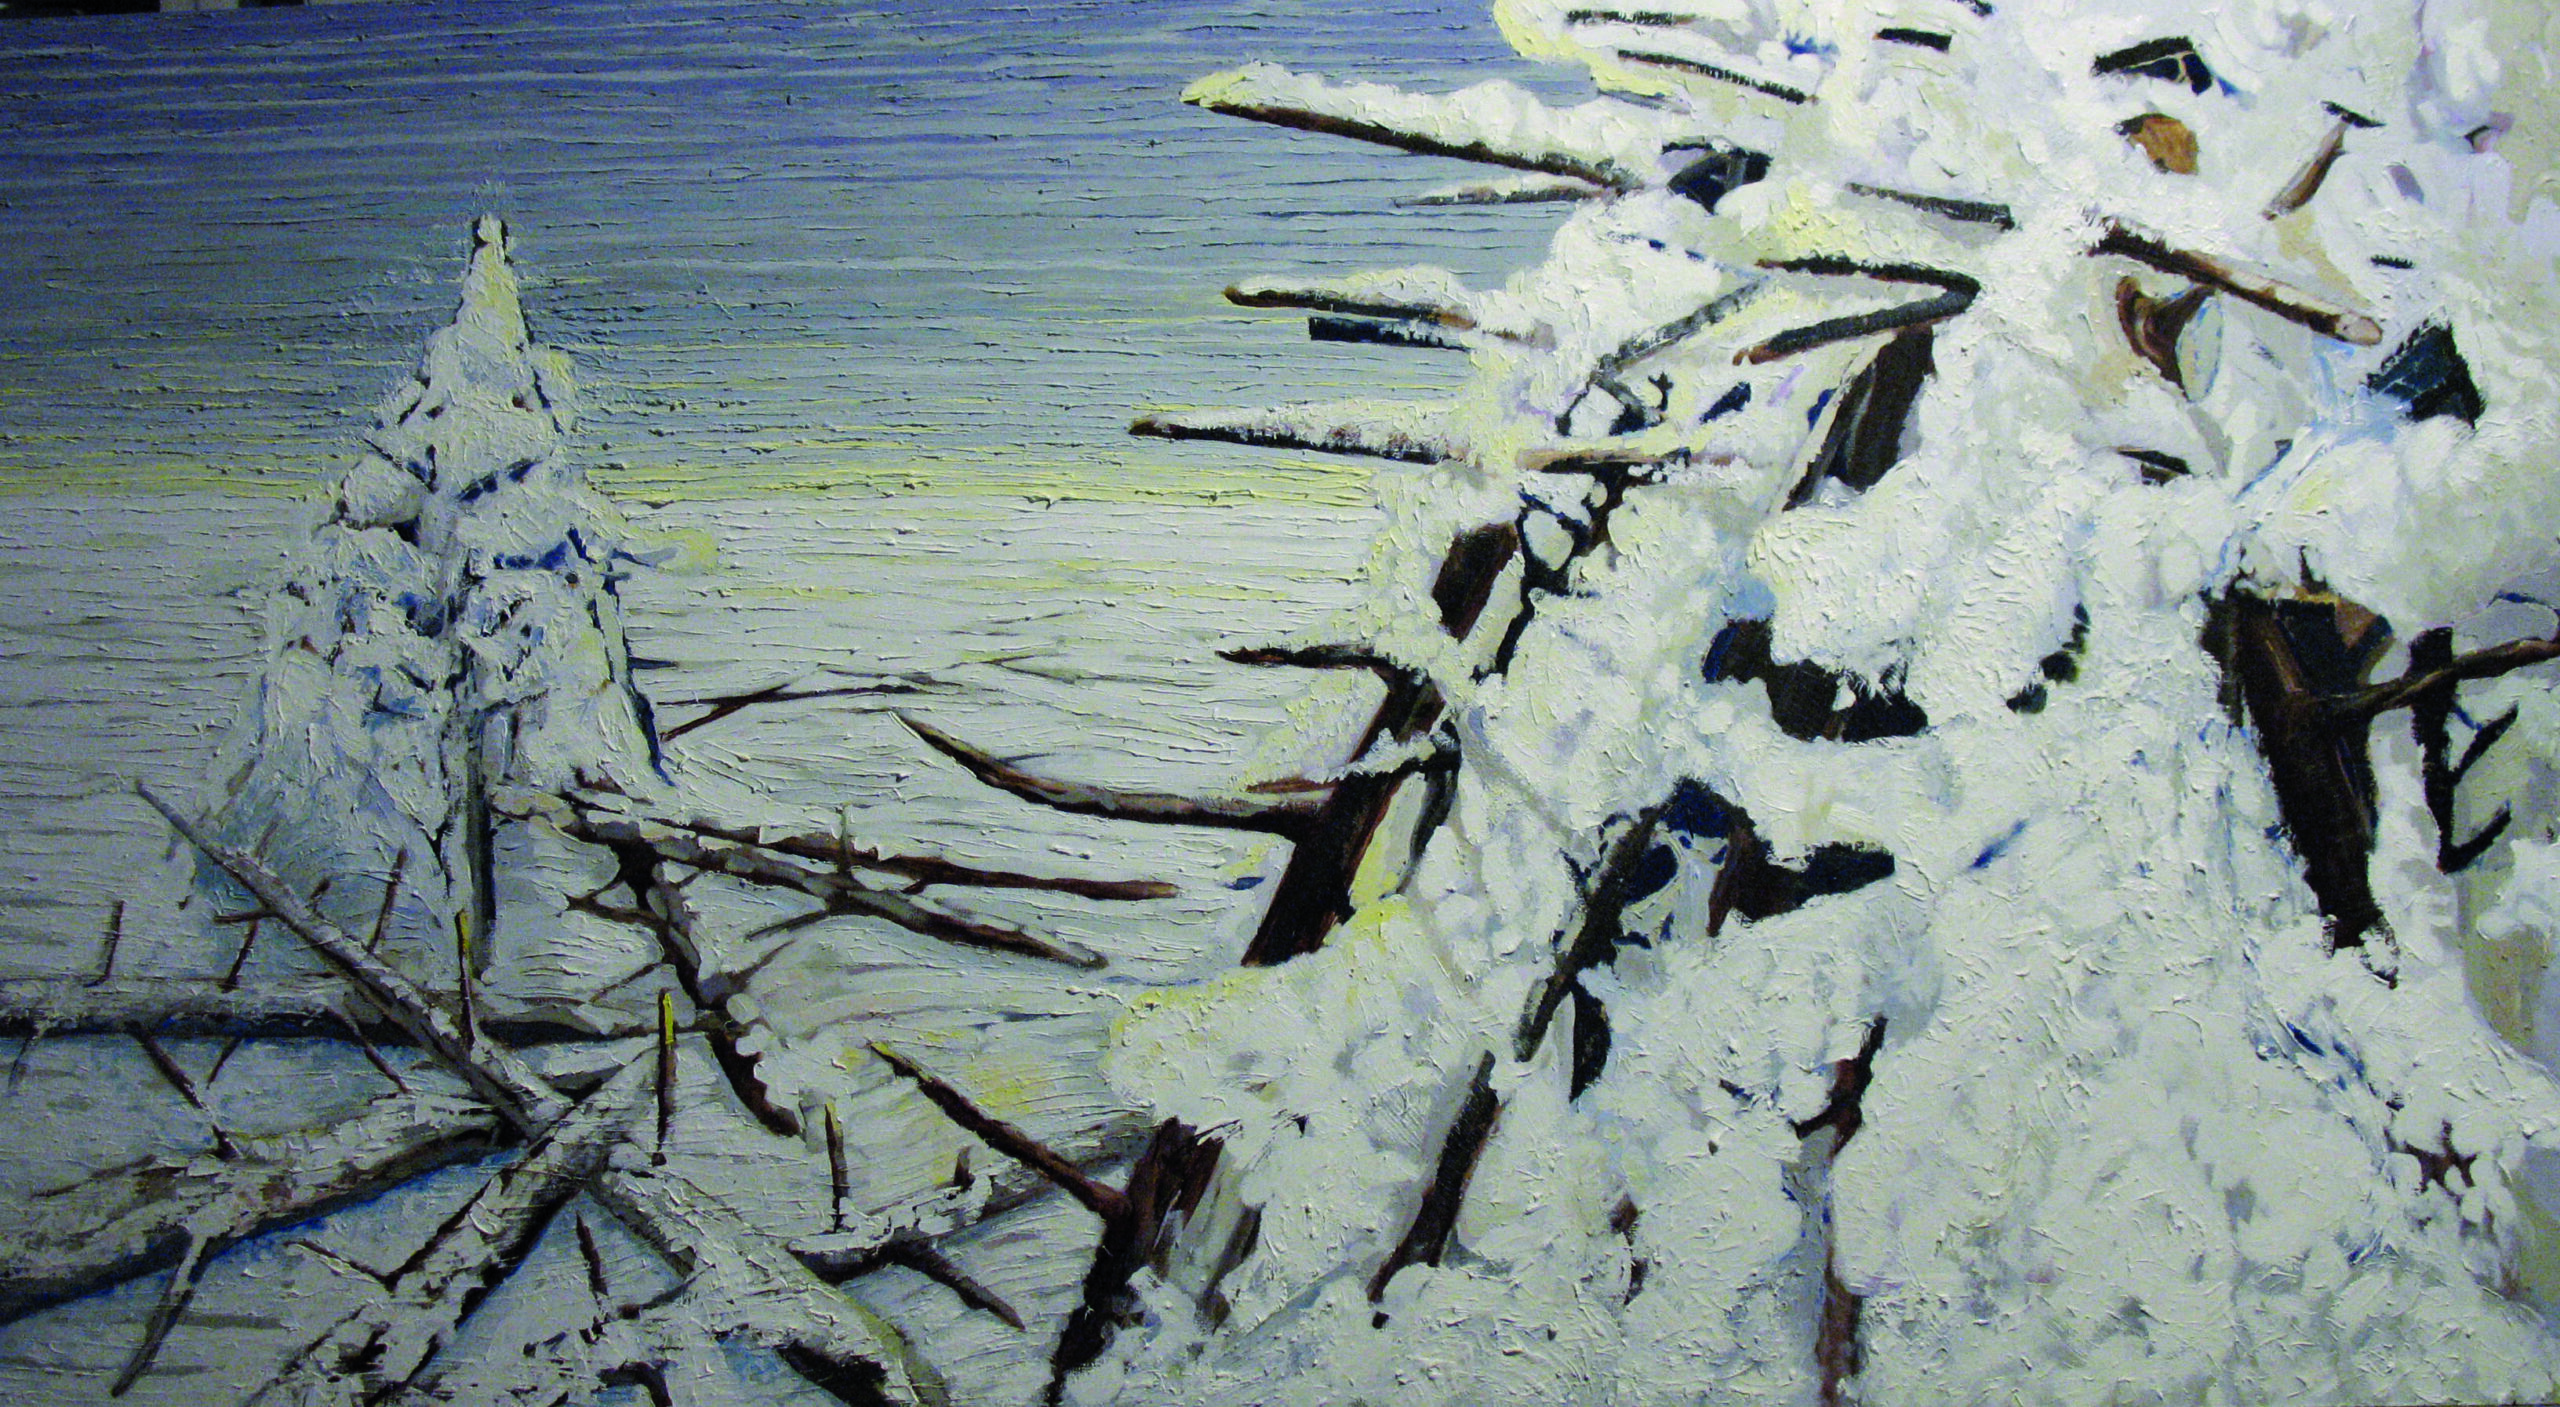 Reprodukja obrazu z cyklu Ostrefki. na obrazie drzewa przysypane śniegiem.